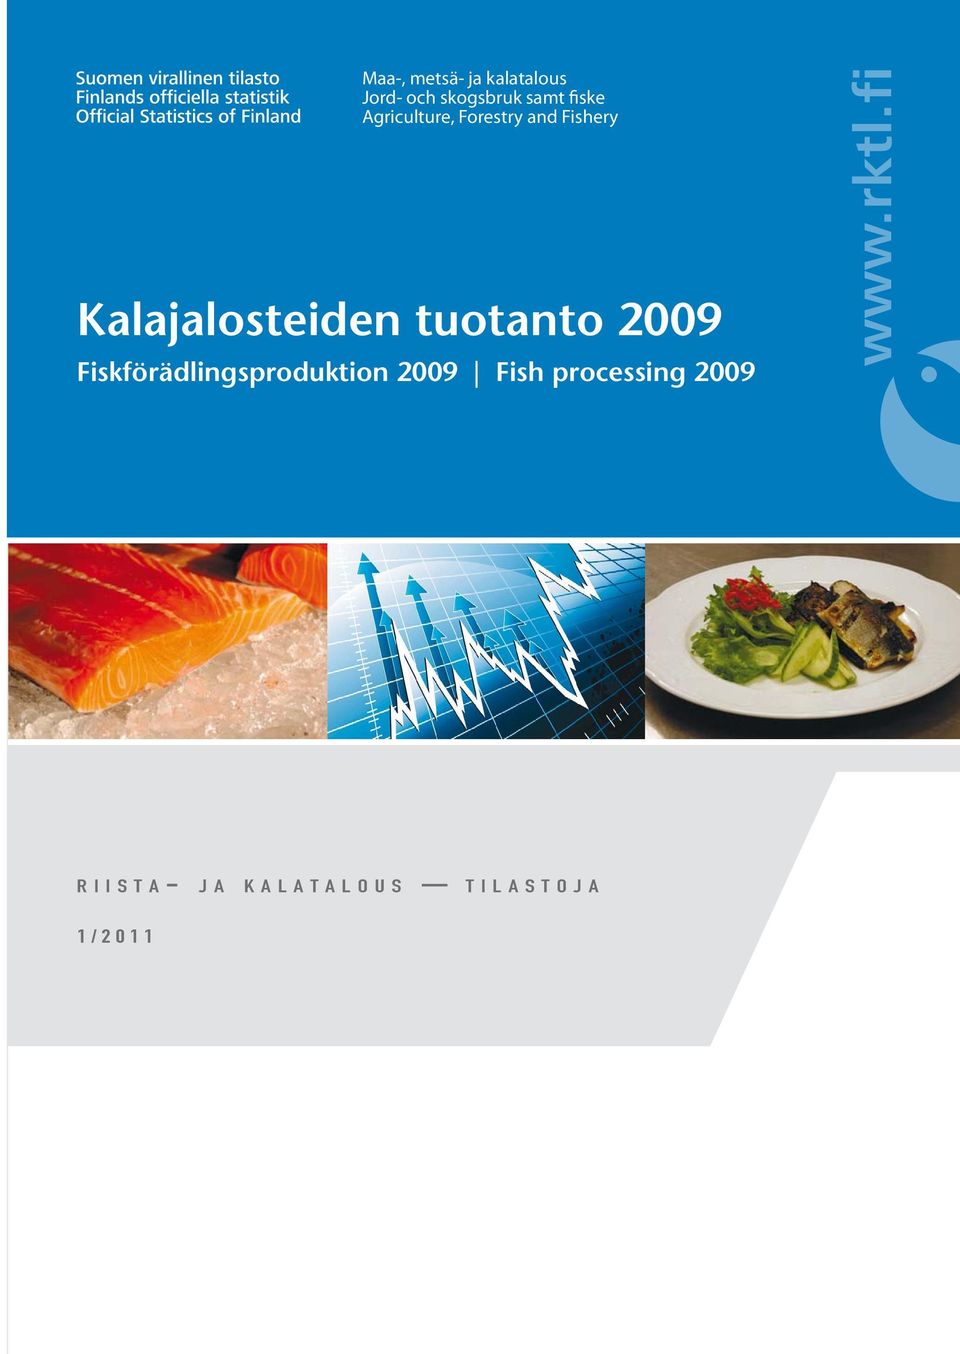 Kalajalosteiden tuotanto 2009